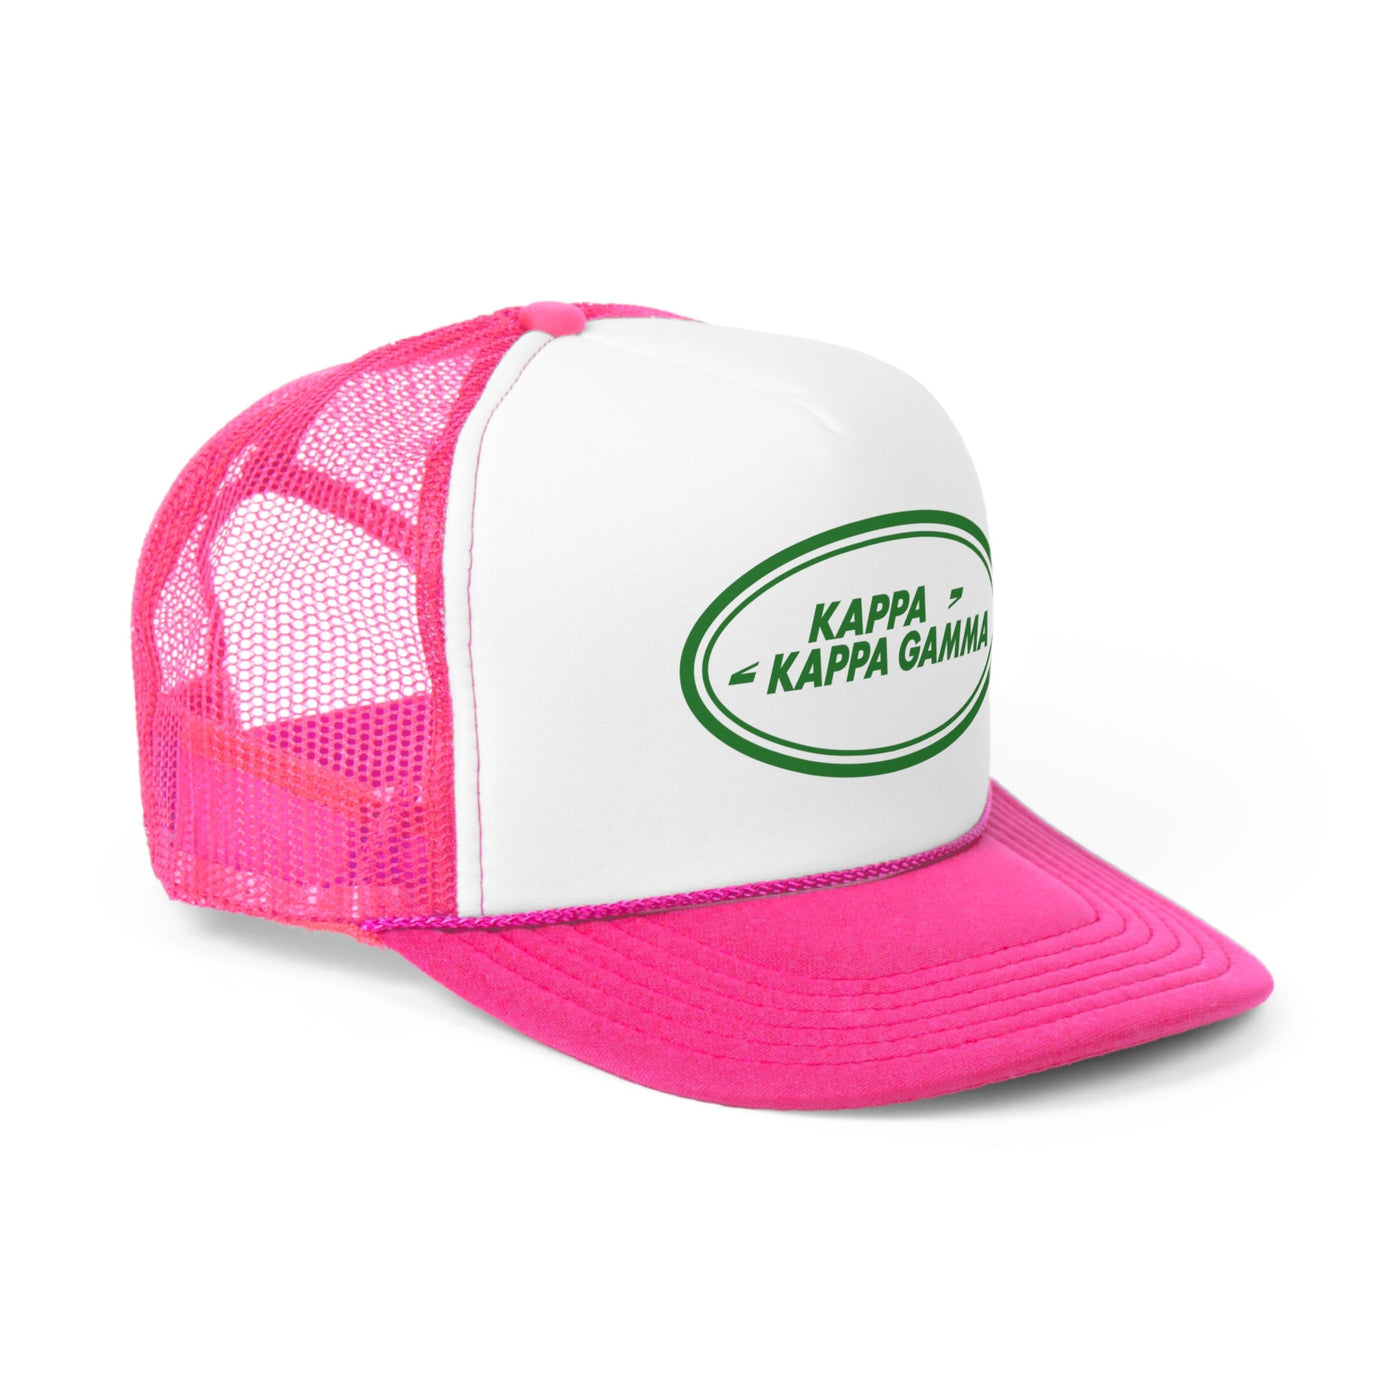 Kappa Kappa Gamma Trendy Rover Trucker Hat